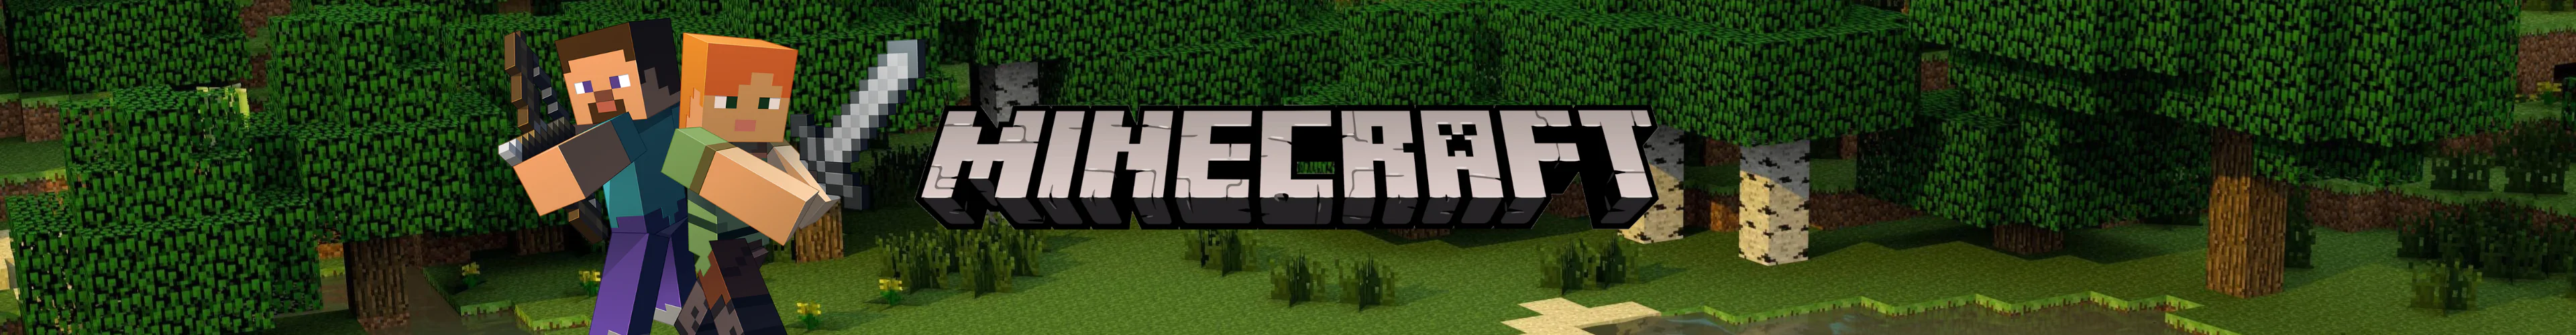 Minecraft plushes banner